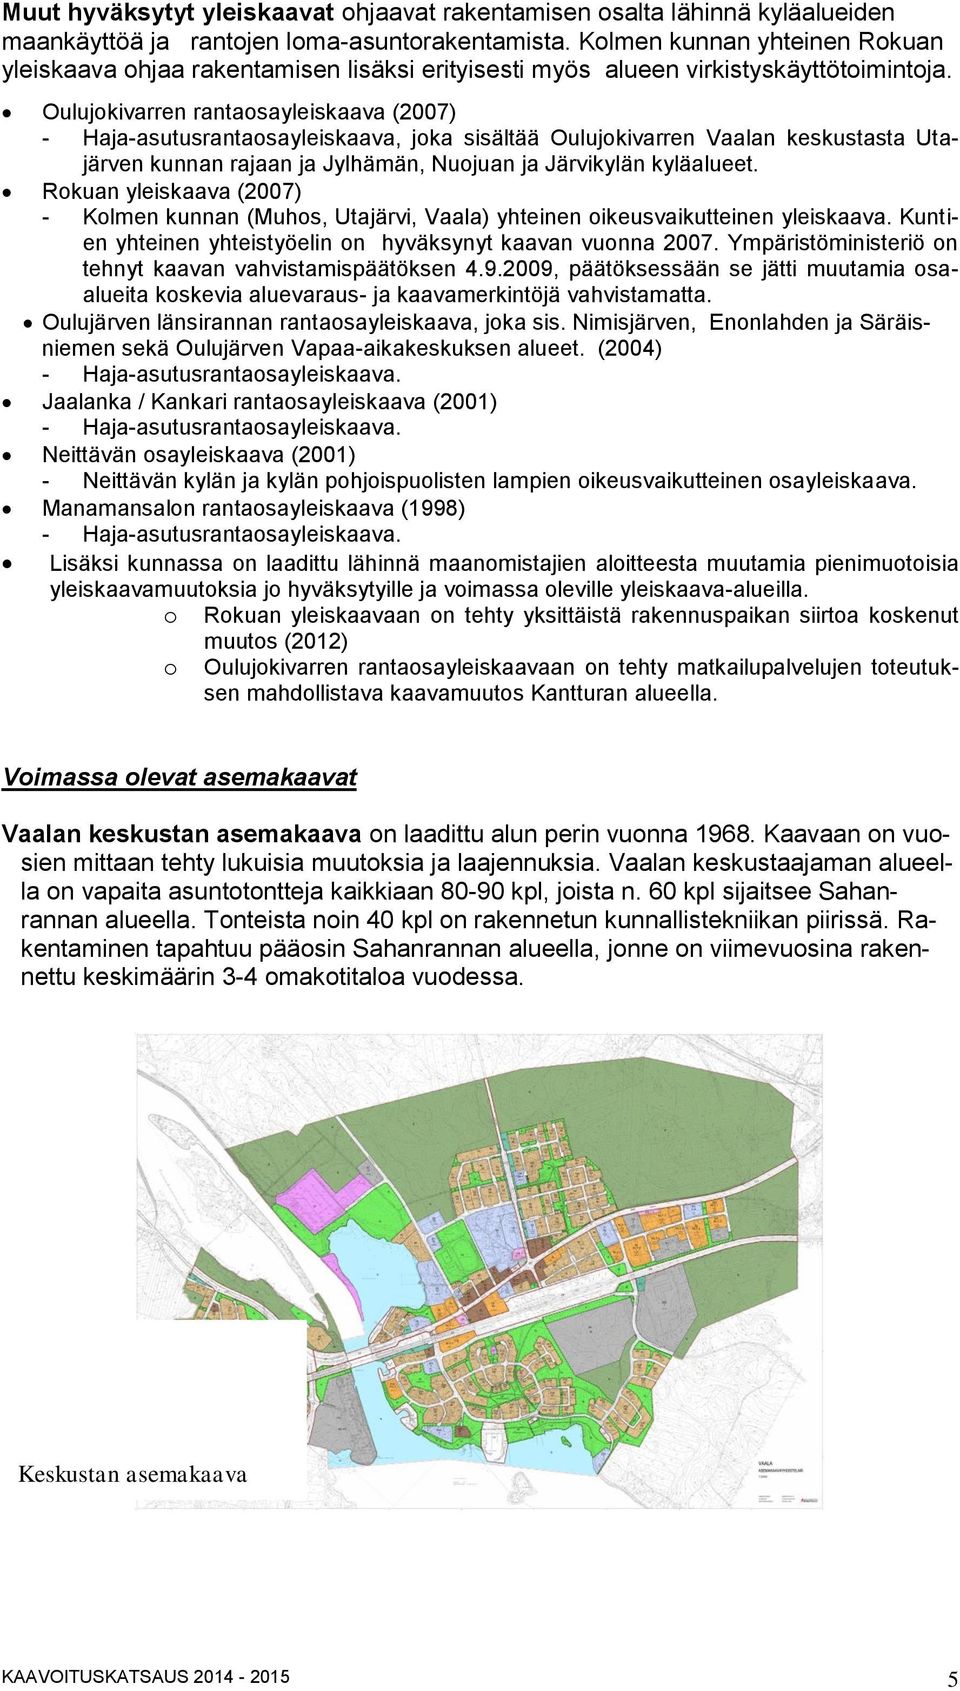 Oulujokivarren rantaosayleiskaava (2007) - Haja-asutusrantaosayleiskaava, joka sisältää Oulujokivarren Vaalan keskustasta Utajärven kunnan rajaan ja Jylhämän, Nuojuan ja Järvikylän kyläalueet.